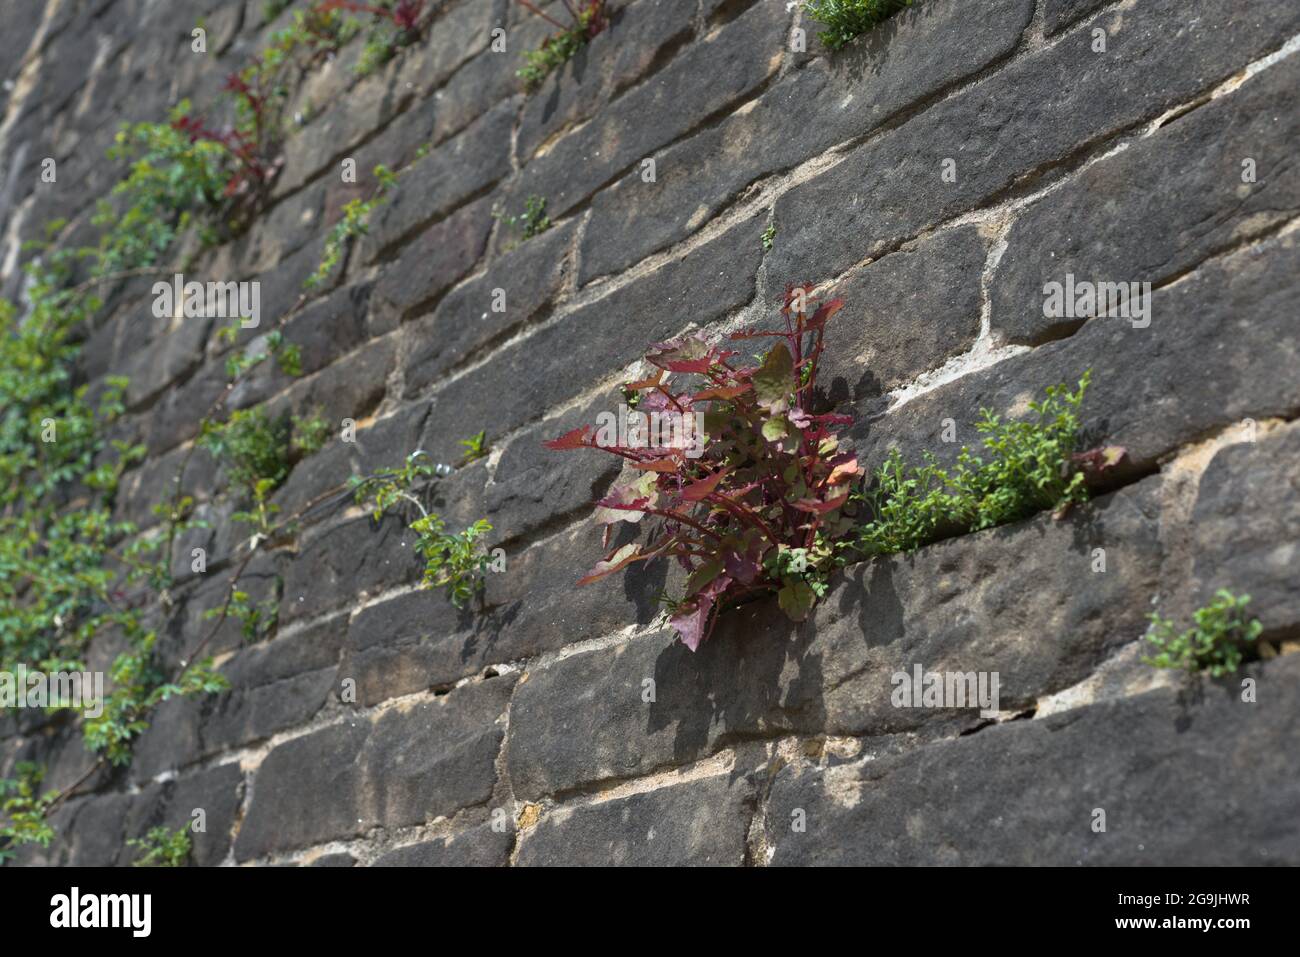 Image plein cadre de mise au point sélective des plantes rouges et vertes qui poussent des fissures dans un mur gris. Concentrez-vous sur les plantes rouges, les plantes peuvent être considérées comme des mauvaises herbes. Banque D'Images